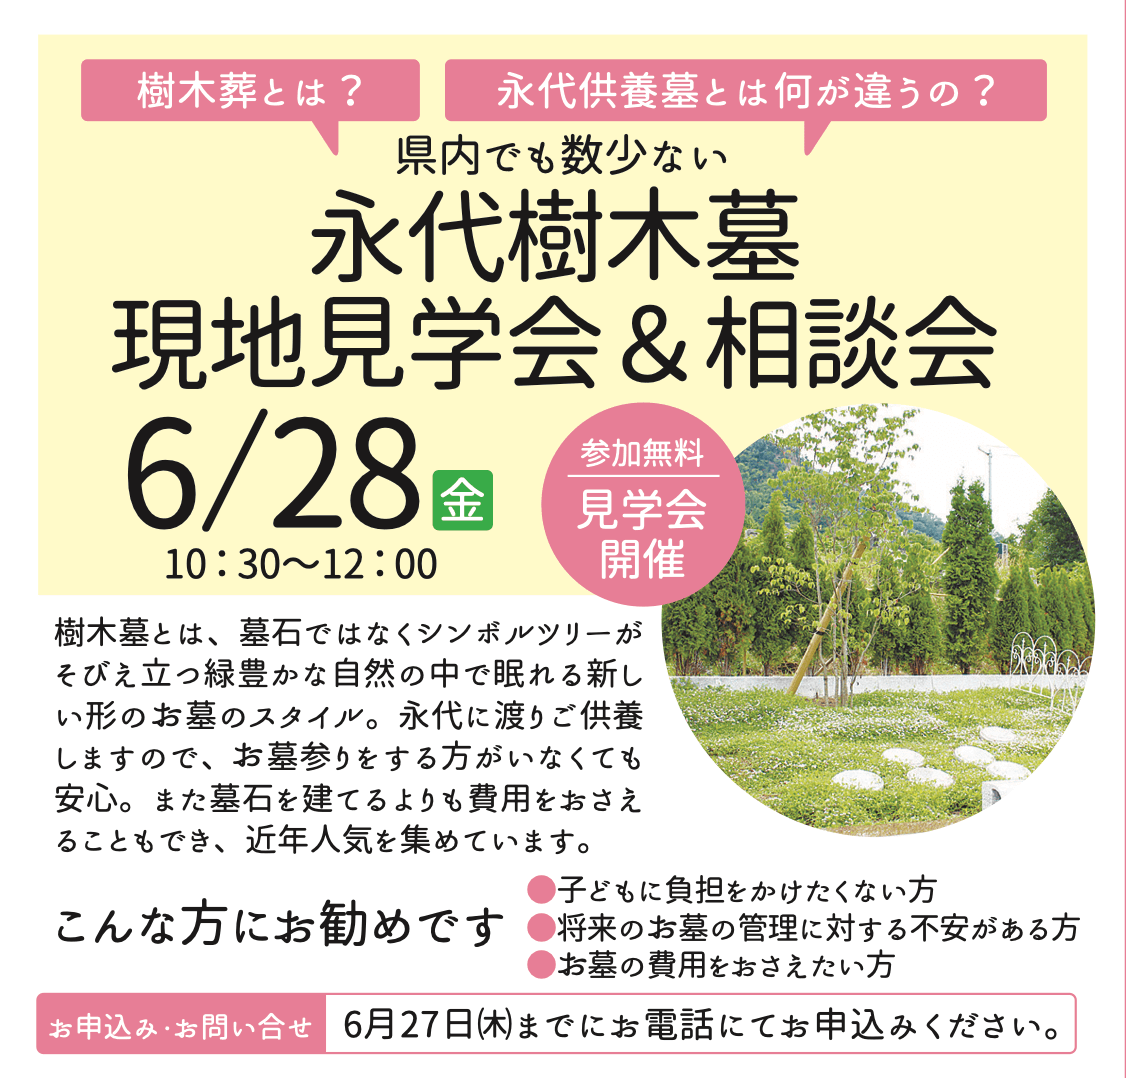 【6月28日開催】永代樹木墓の現地見学会&相談会